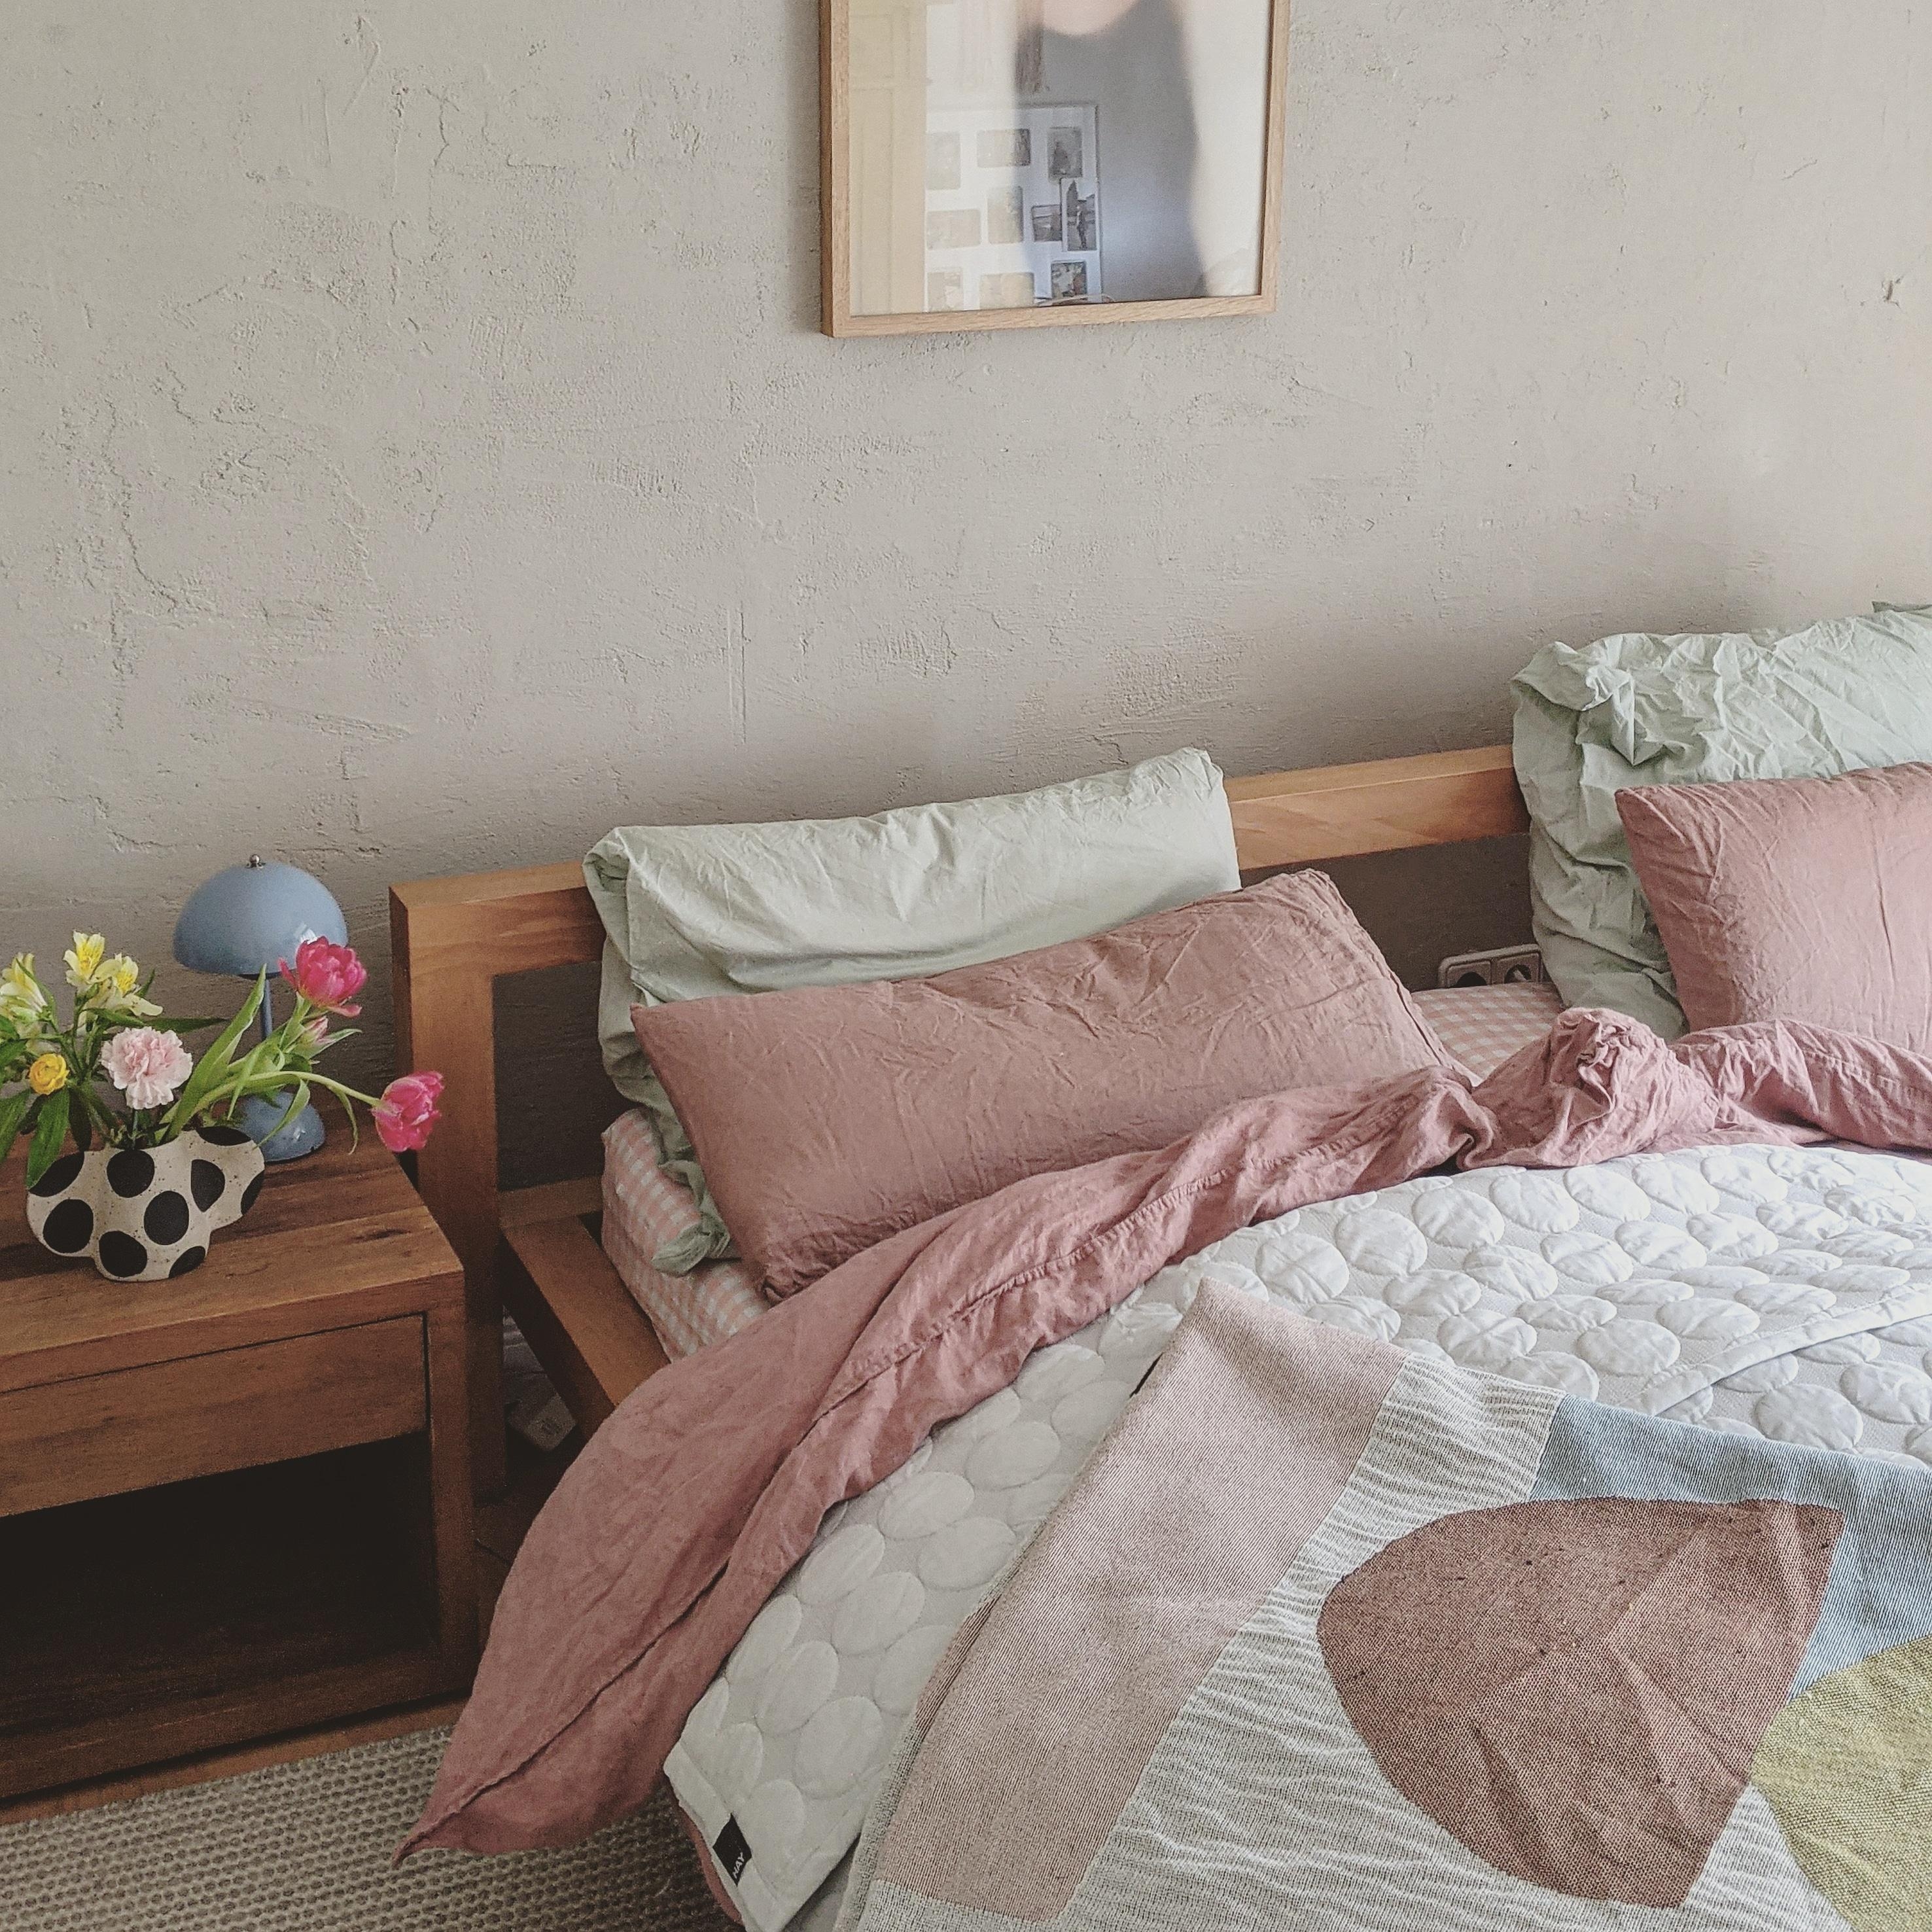 #schlafzimmer #bild#home#wohnen#living#altbau#interior#home#bett#scandinavisch#couchstyle#cozy#farben#blumen